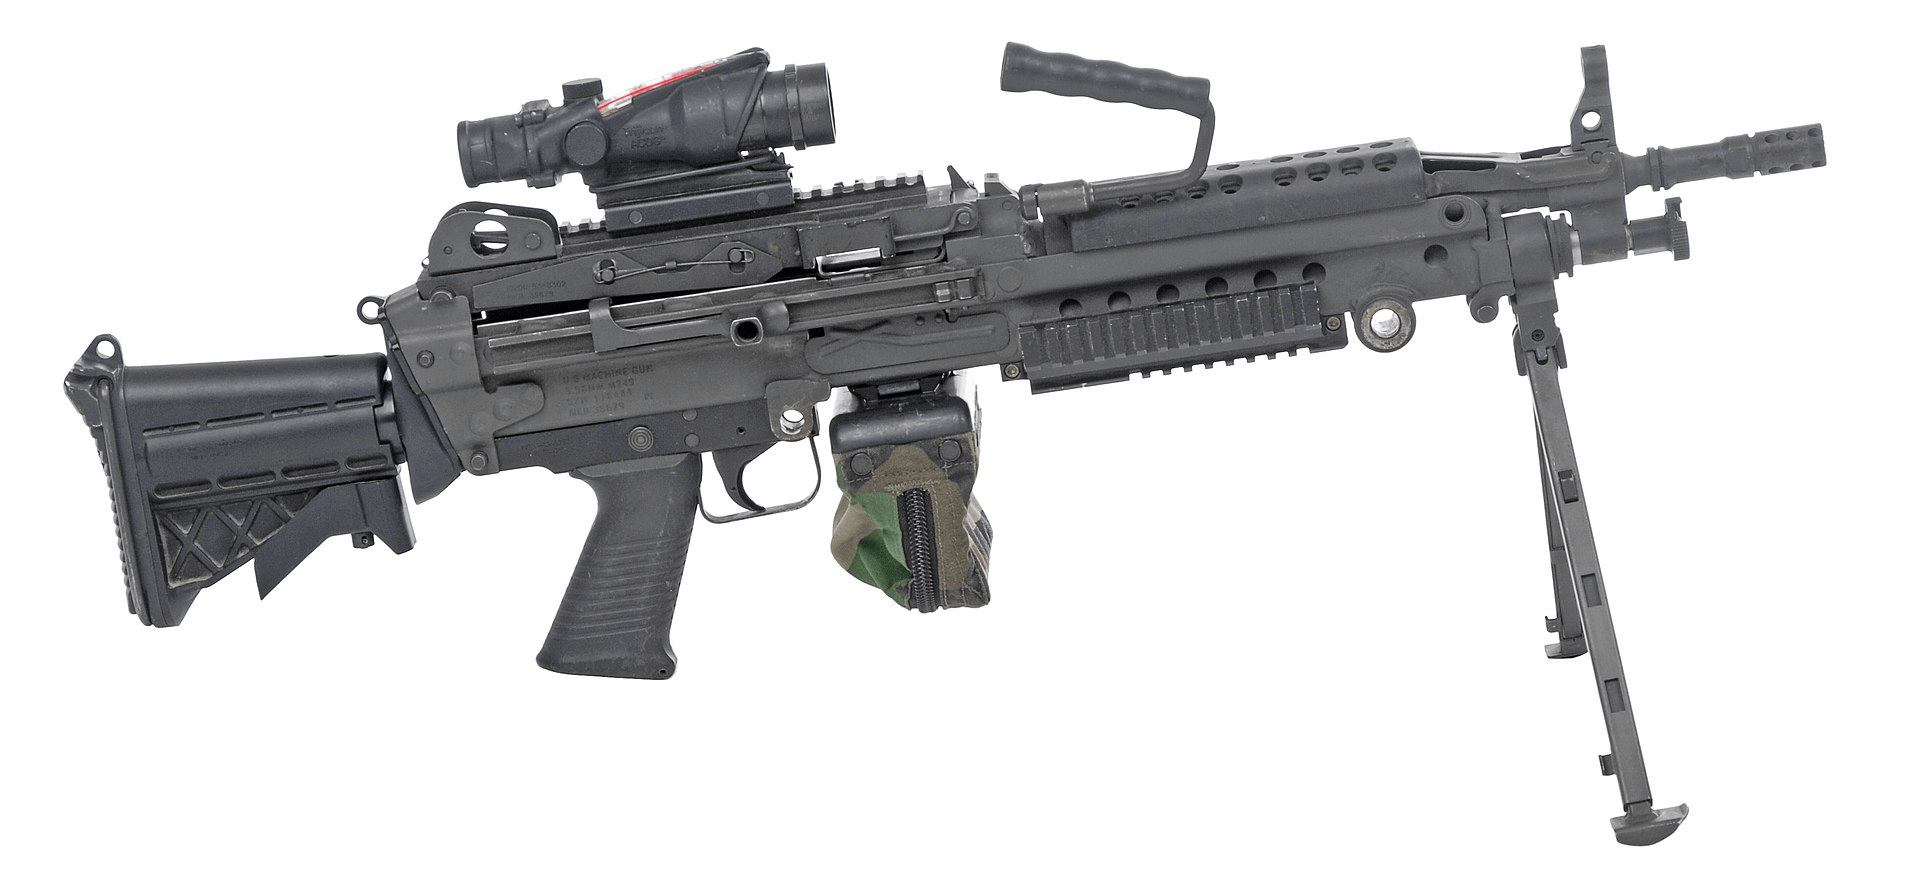 m249采用气动,气冷原理,枪管可快速更换令机枪手在枪管故障或过热时无